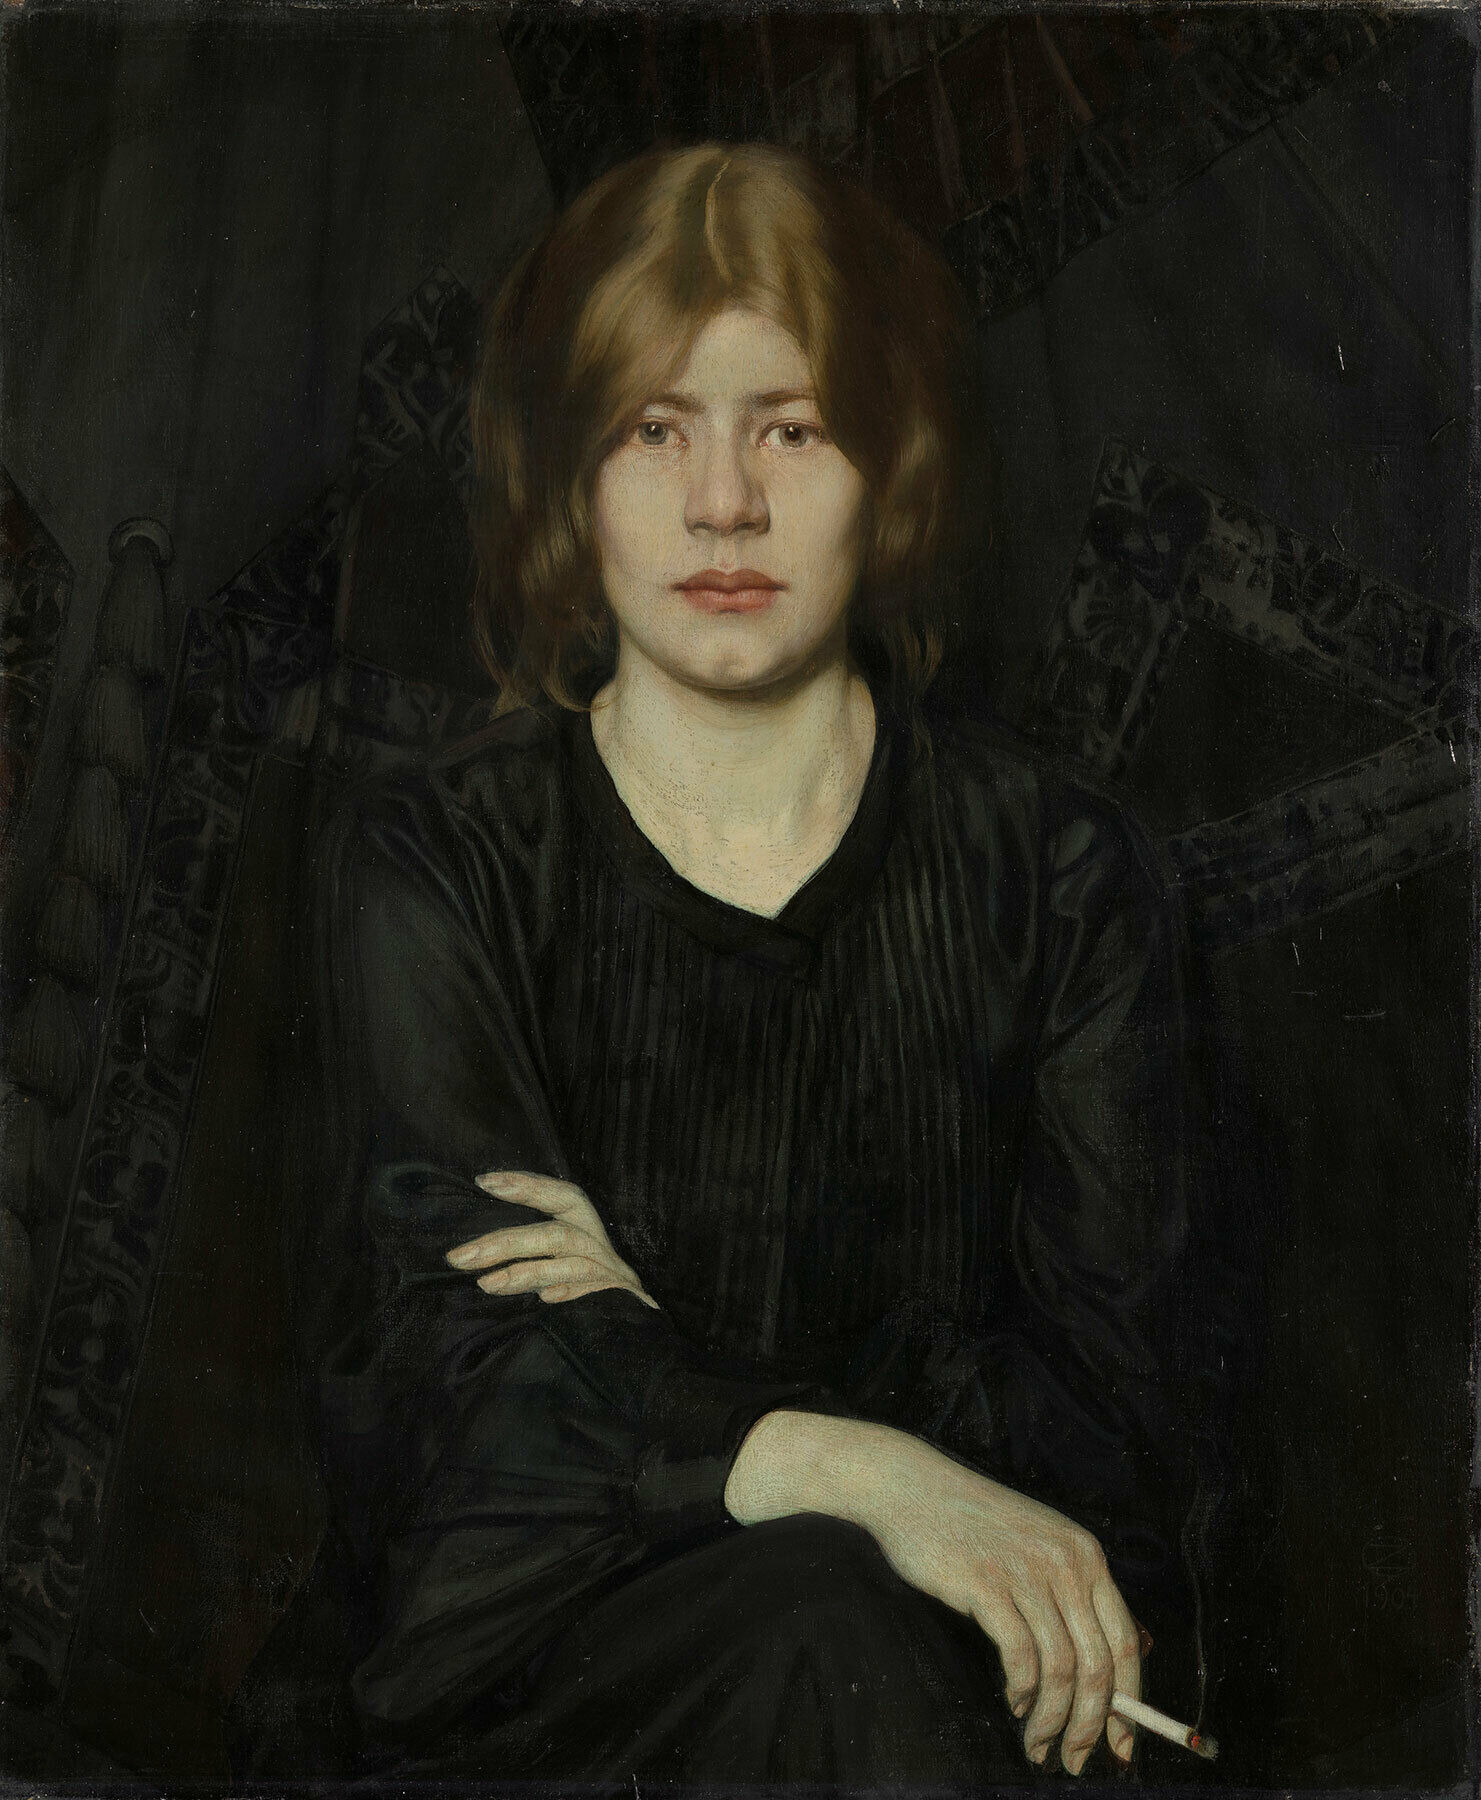 Oskar Zwintscher, Bildnis einer Dame mit Zigarette, 1904. Albertinum